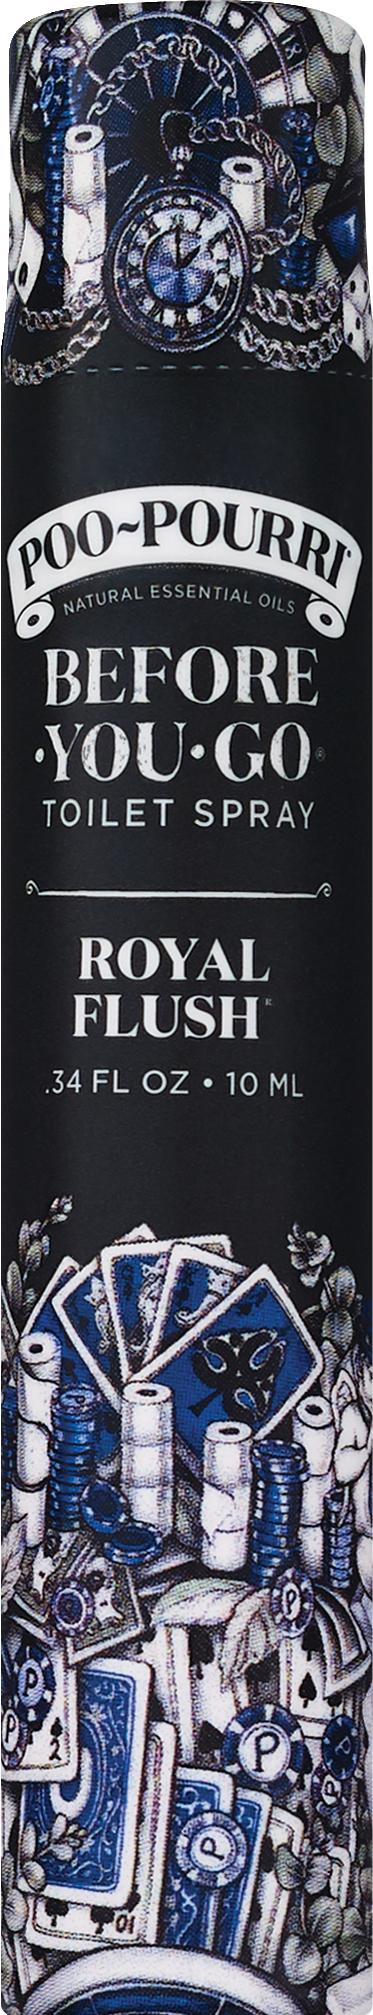 Poo-Pourri Travel Size Royal Flush Before You Go Toilet Spray, 0.34 OZ